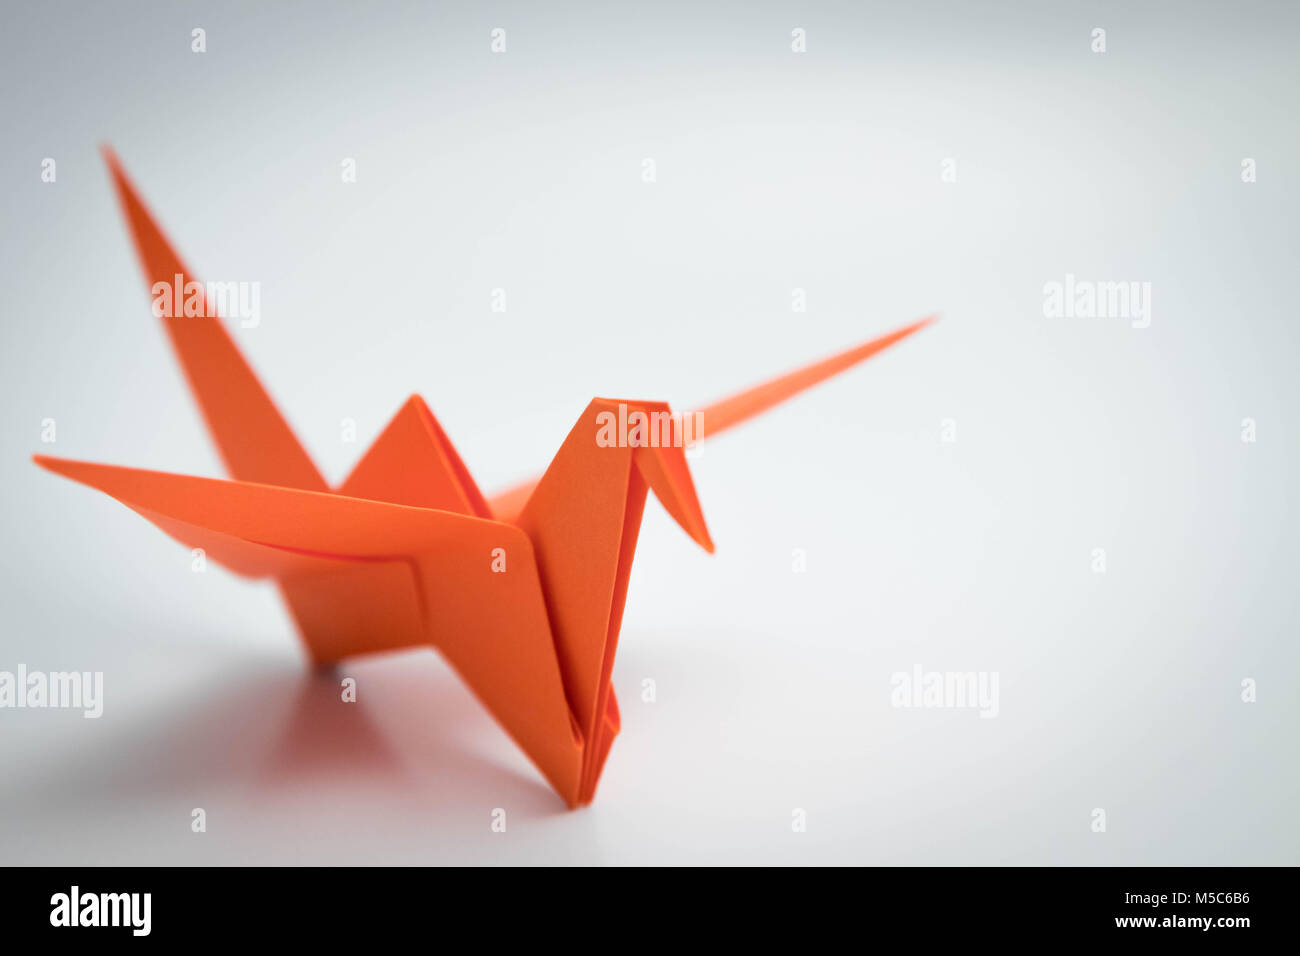 single orange bird origami isolated Stock Photo